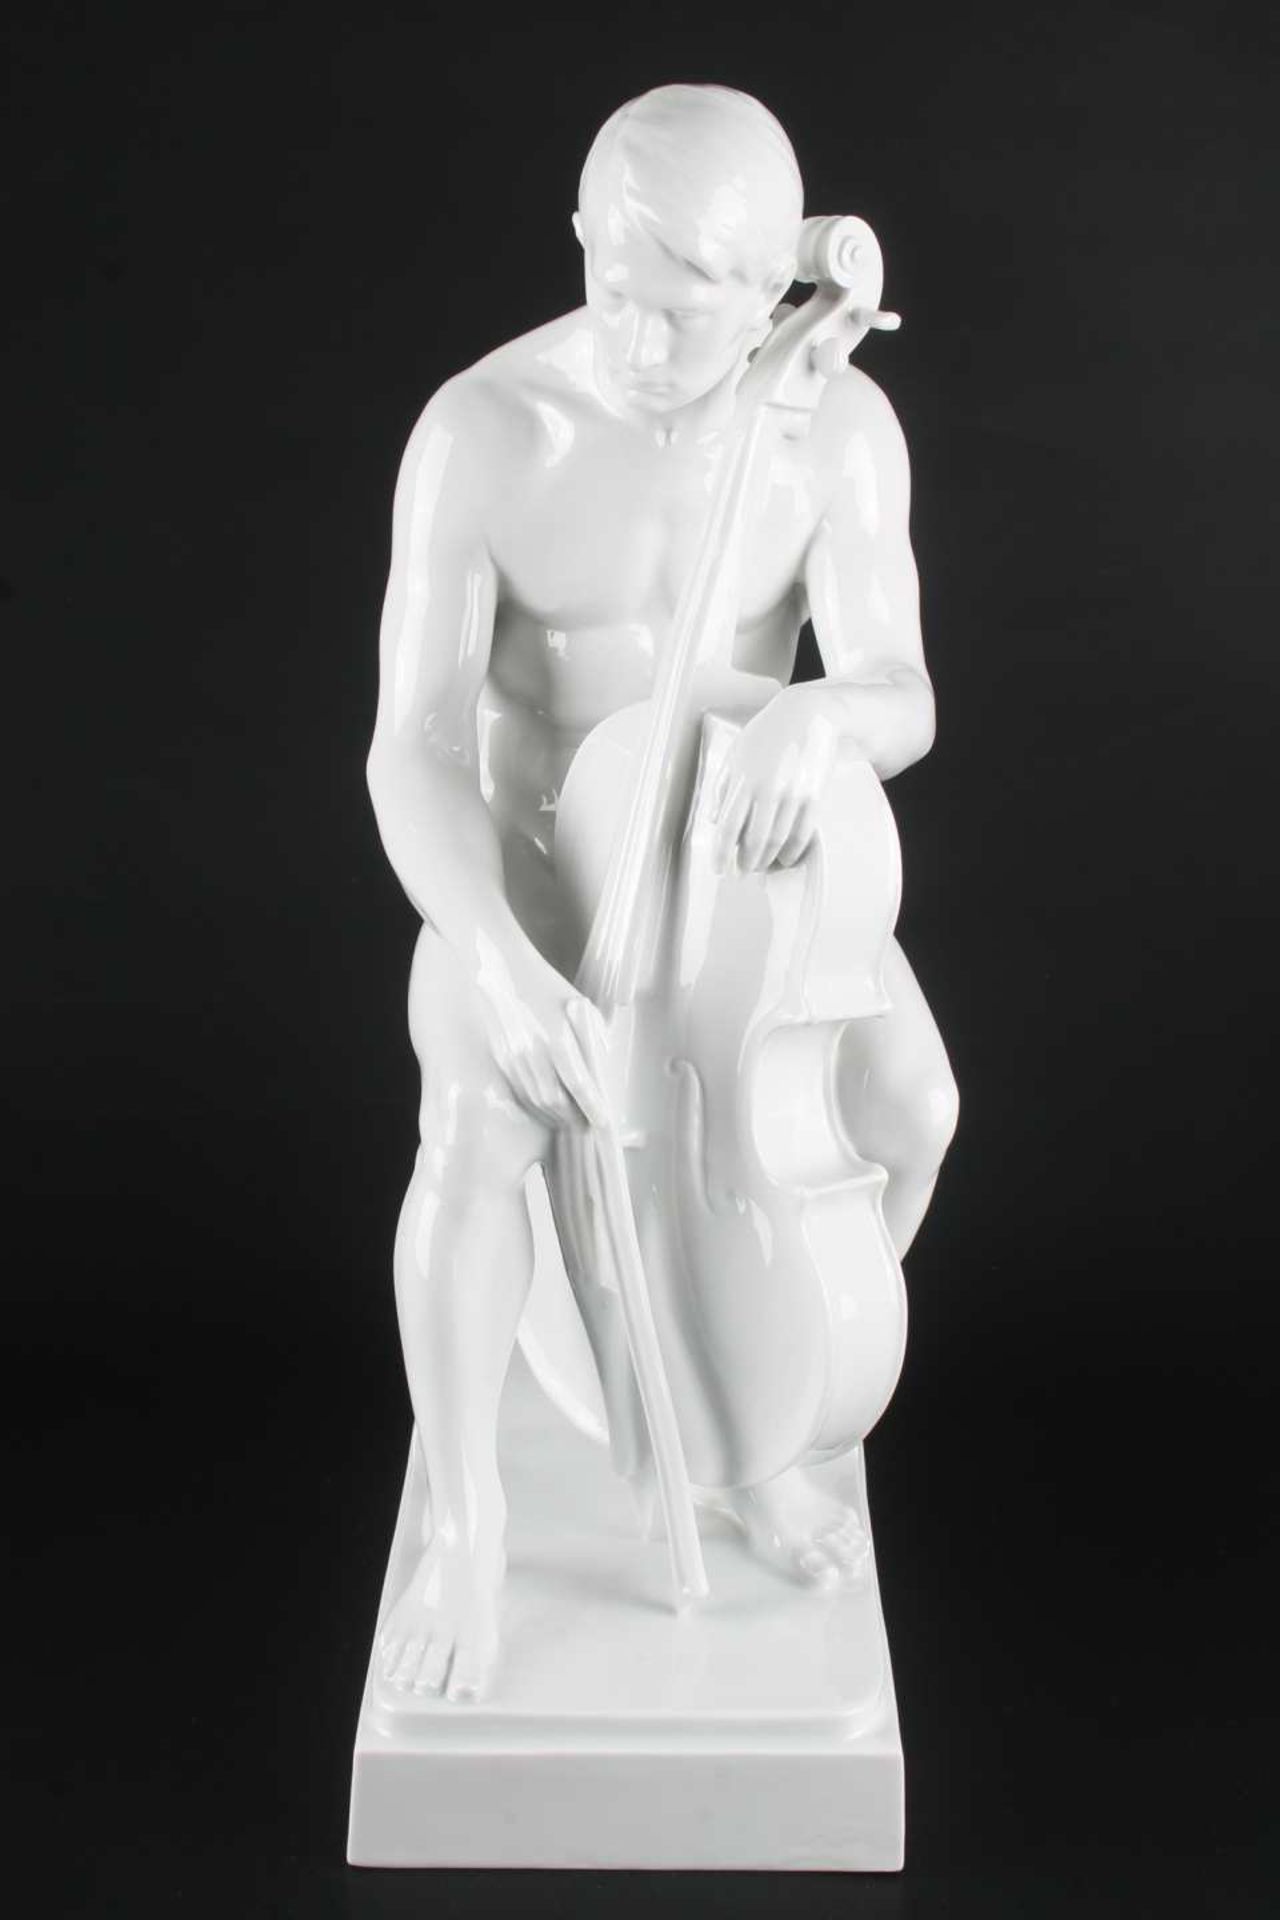 Rosenthal große Porzellanfigur Träumerei von Karl Himmelstoss, porcelain sculpture dreamery, - Bild 2 aus 9